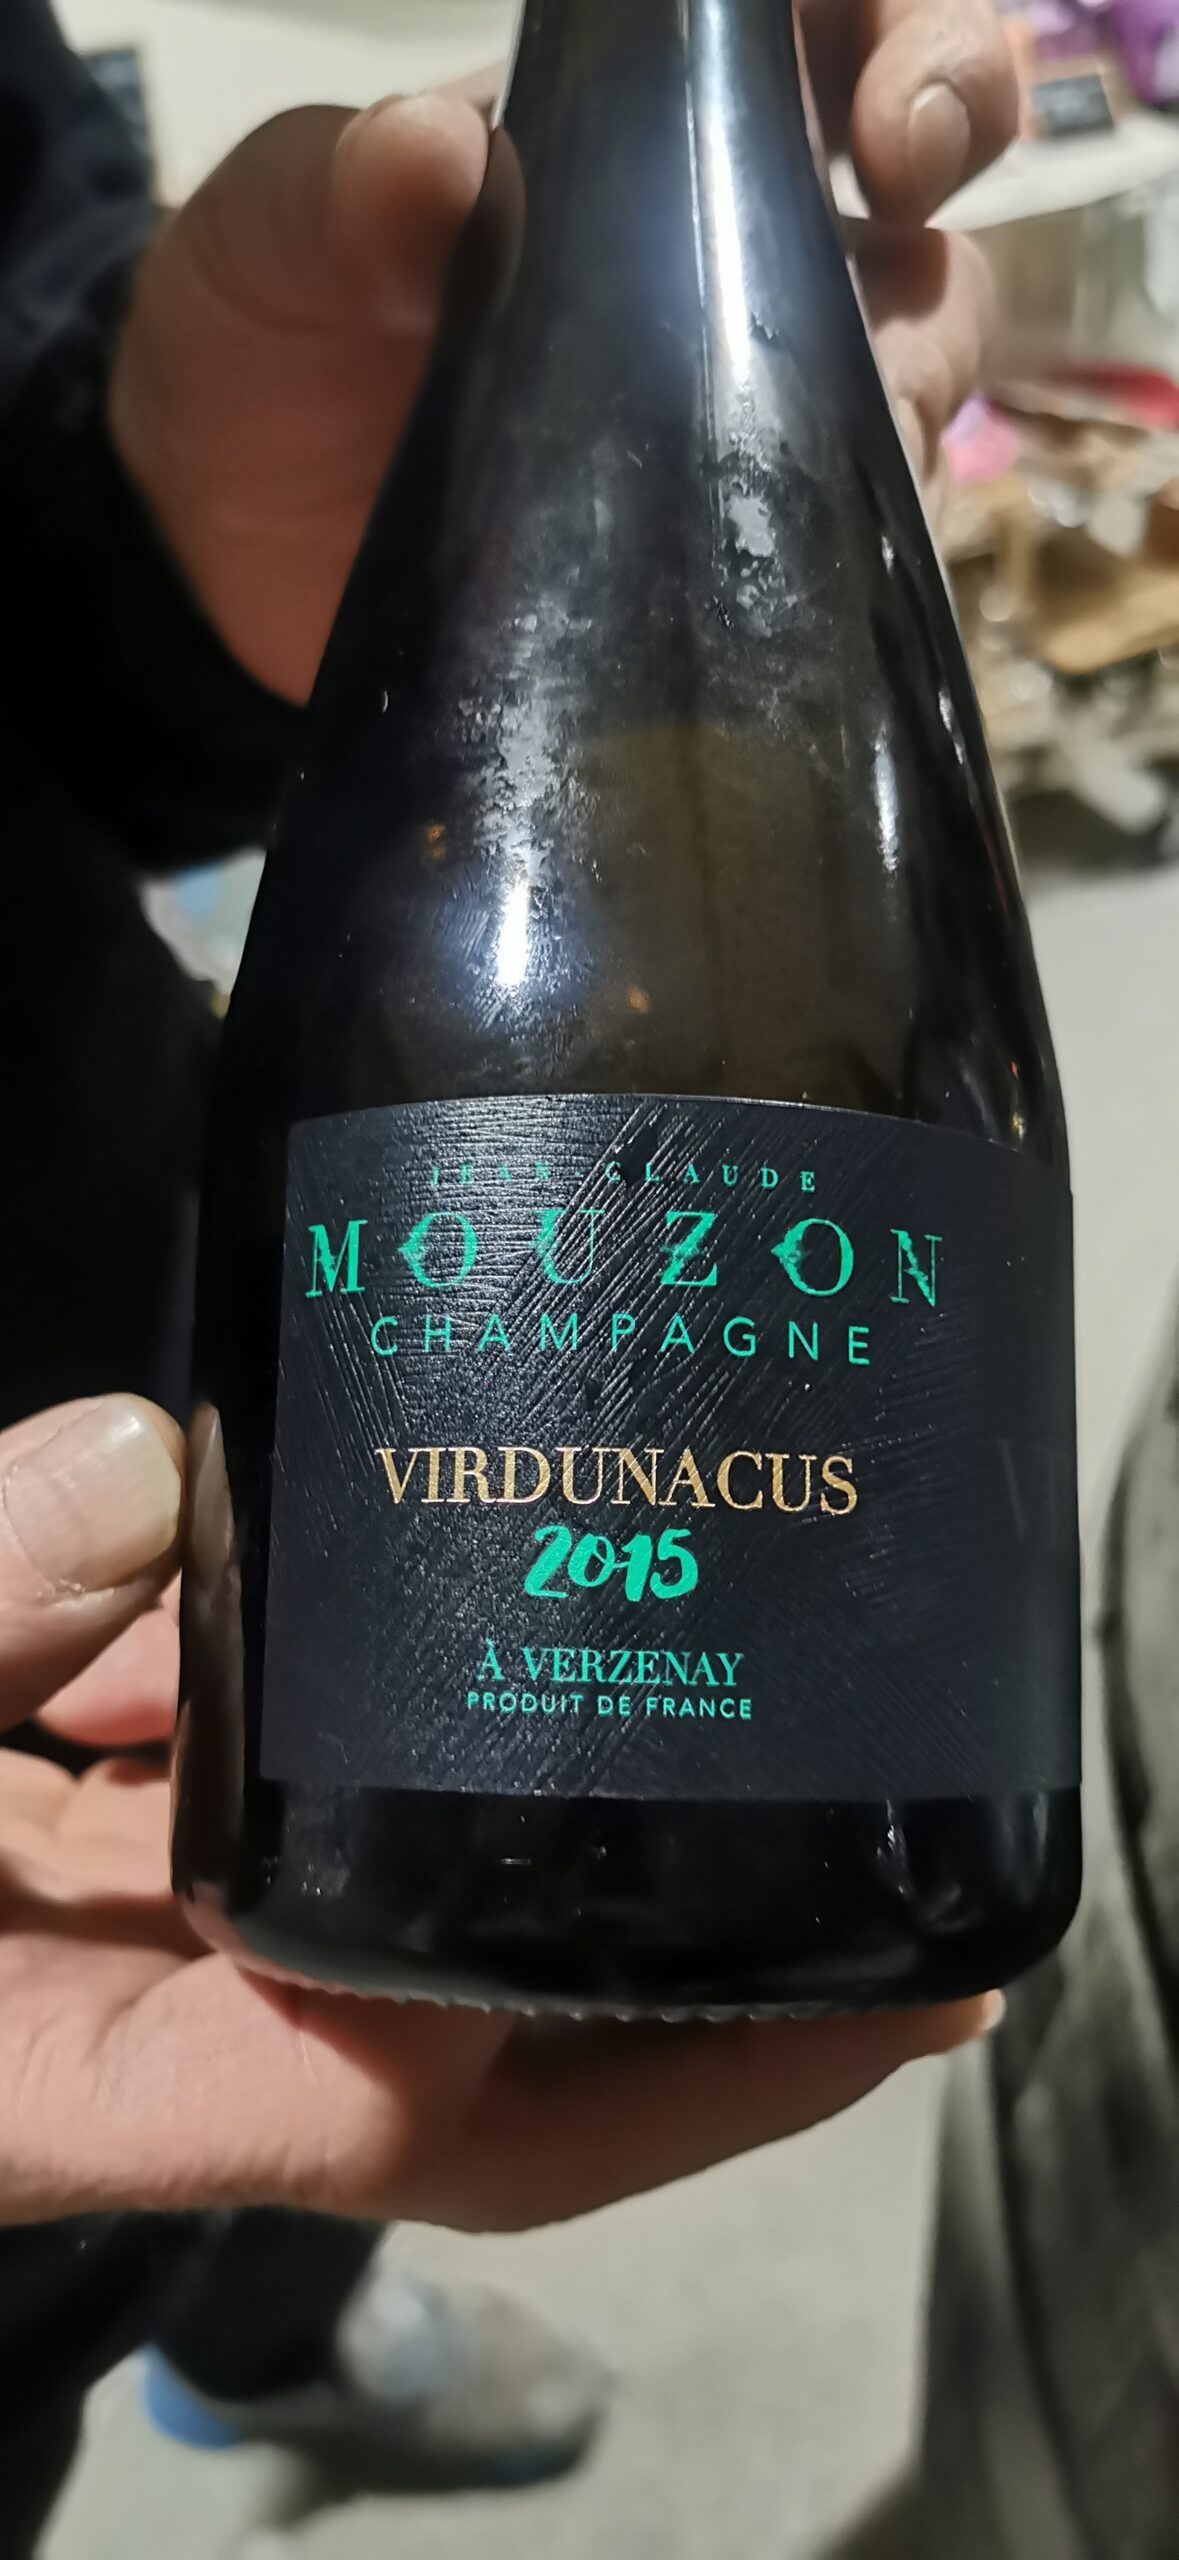 Virdunacus 2015 Champagne Jean Claude Mouzon, articolo e foto dell'autrice: Elsa Leandri in Champagne 2024, seconda tappa a Verzenay